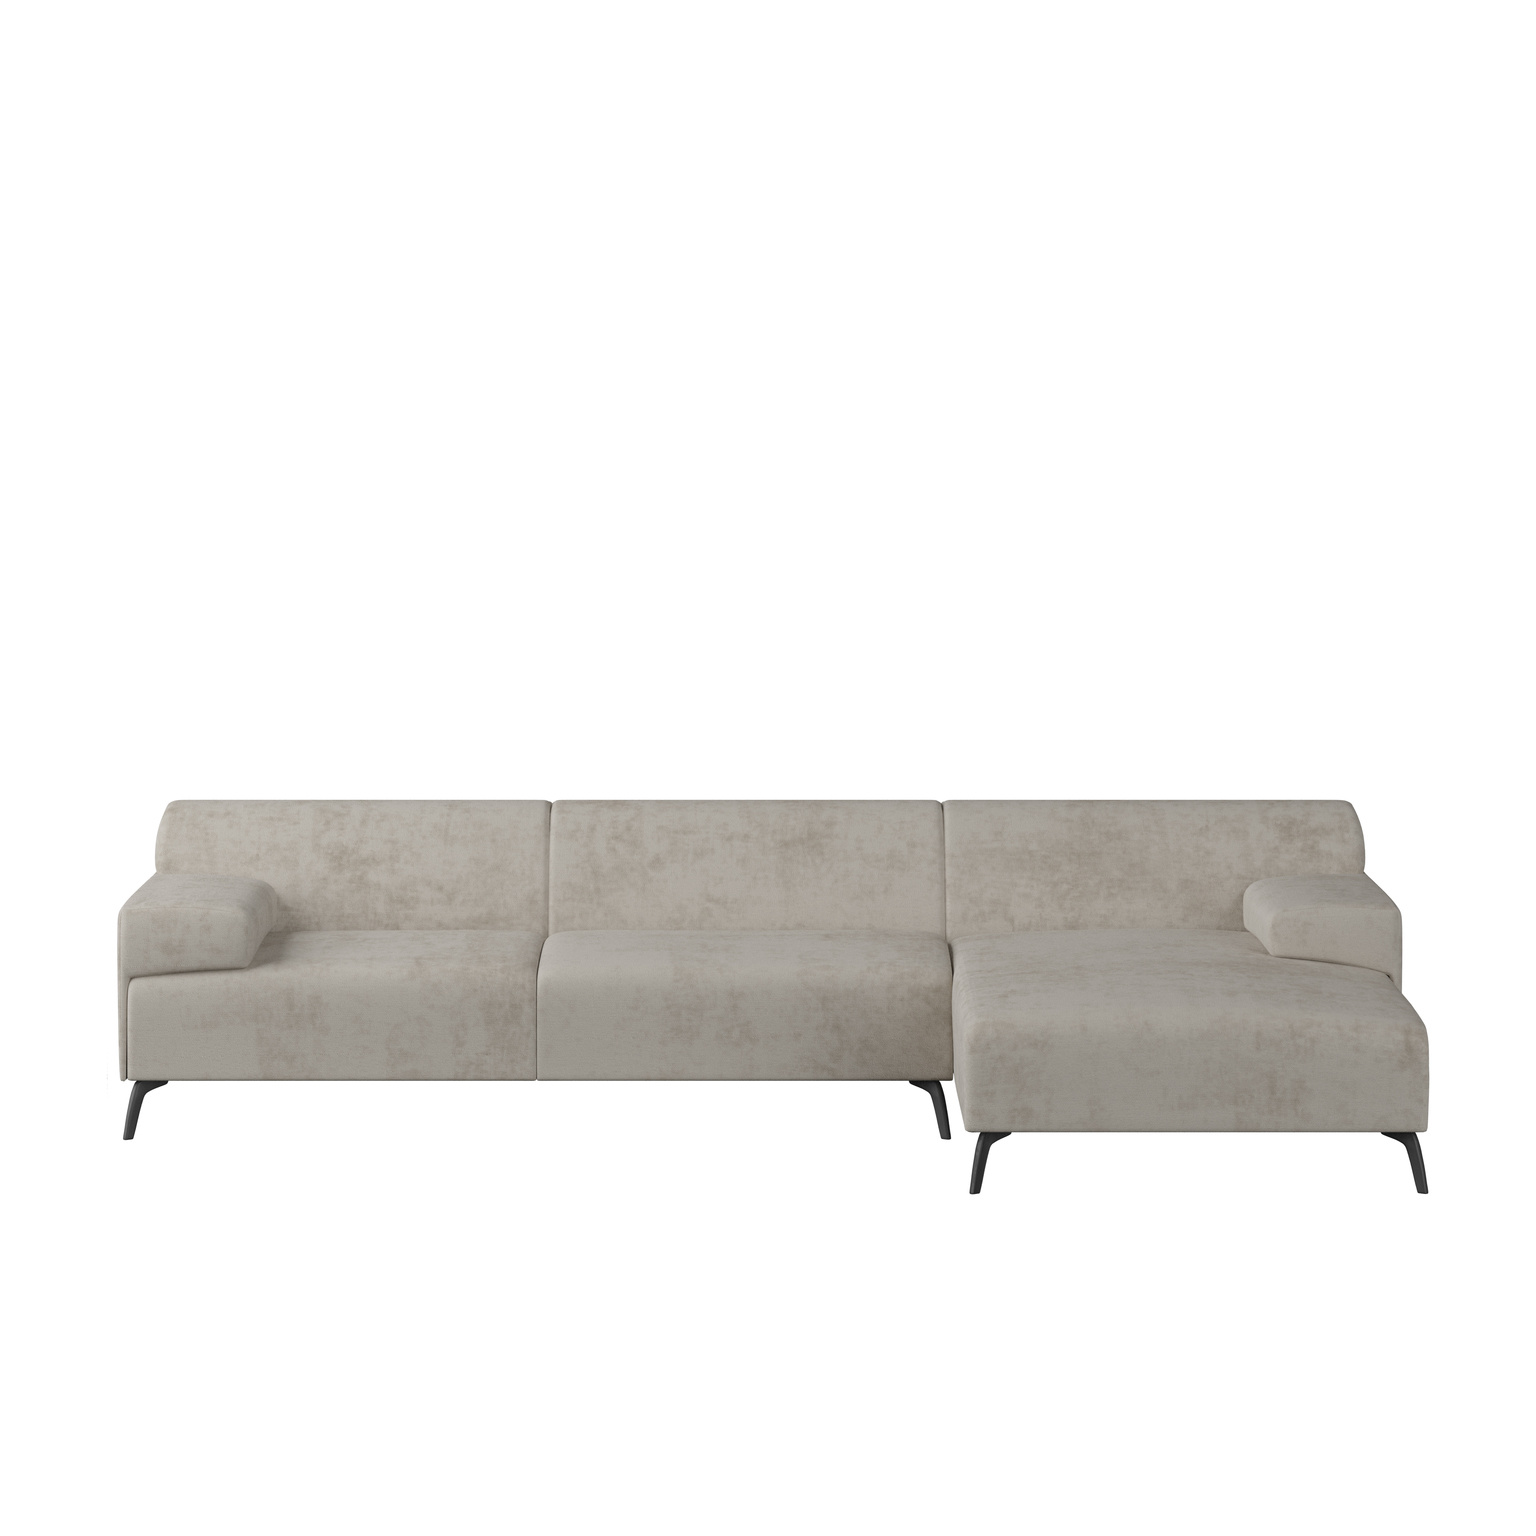 Lounge Sofa Lugano Milton Fabric